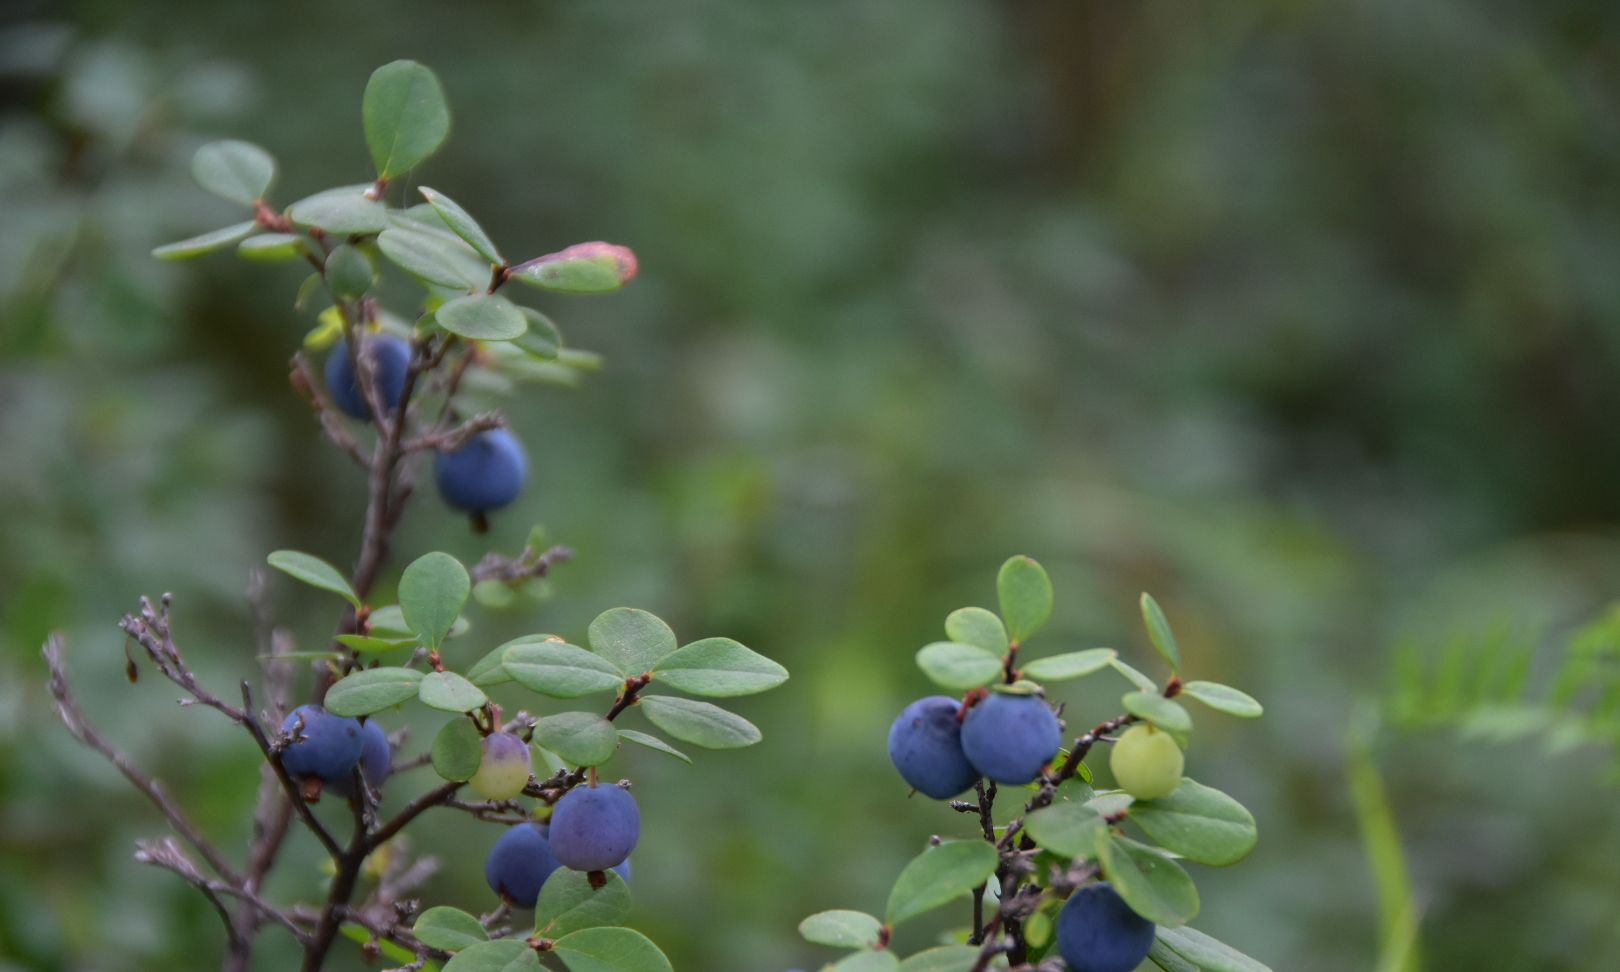 大兴安岭漠河野生蓝莓,七月未八月初是成熟的季节!